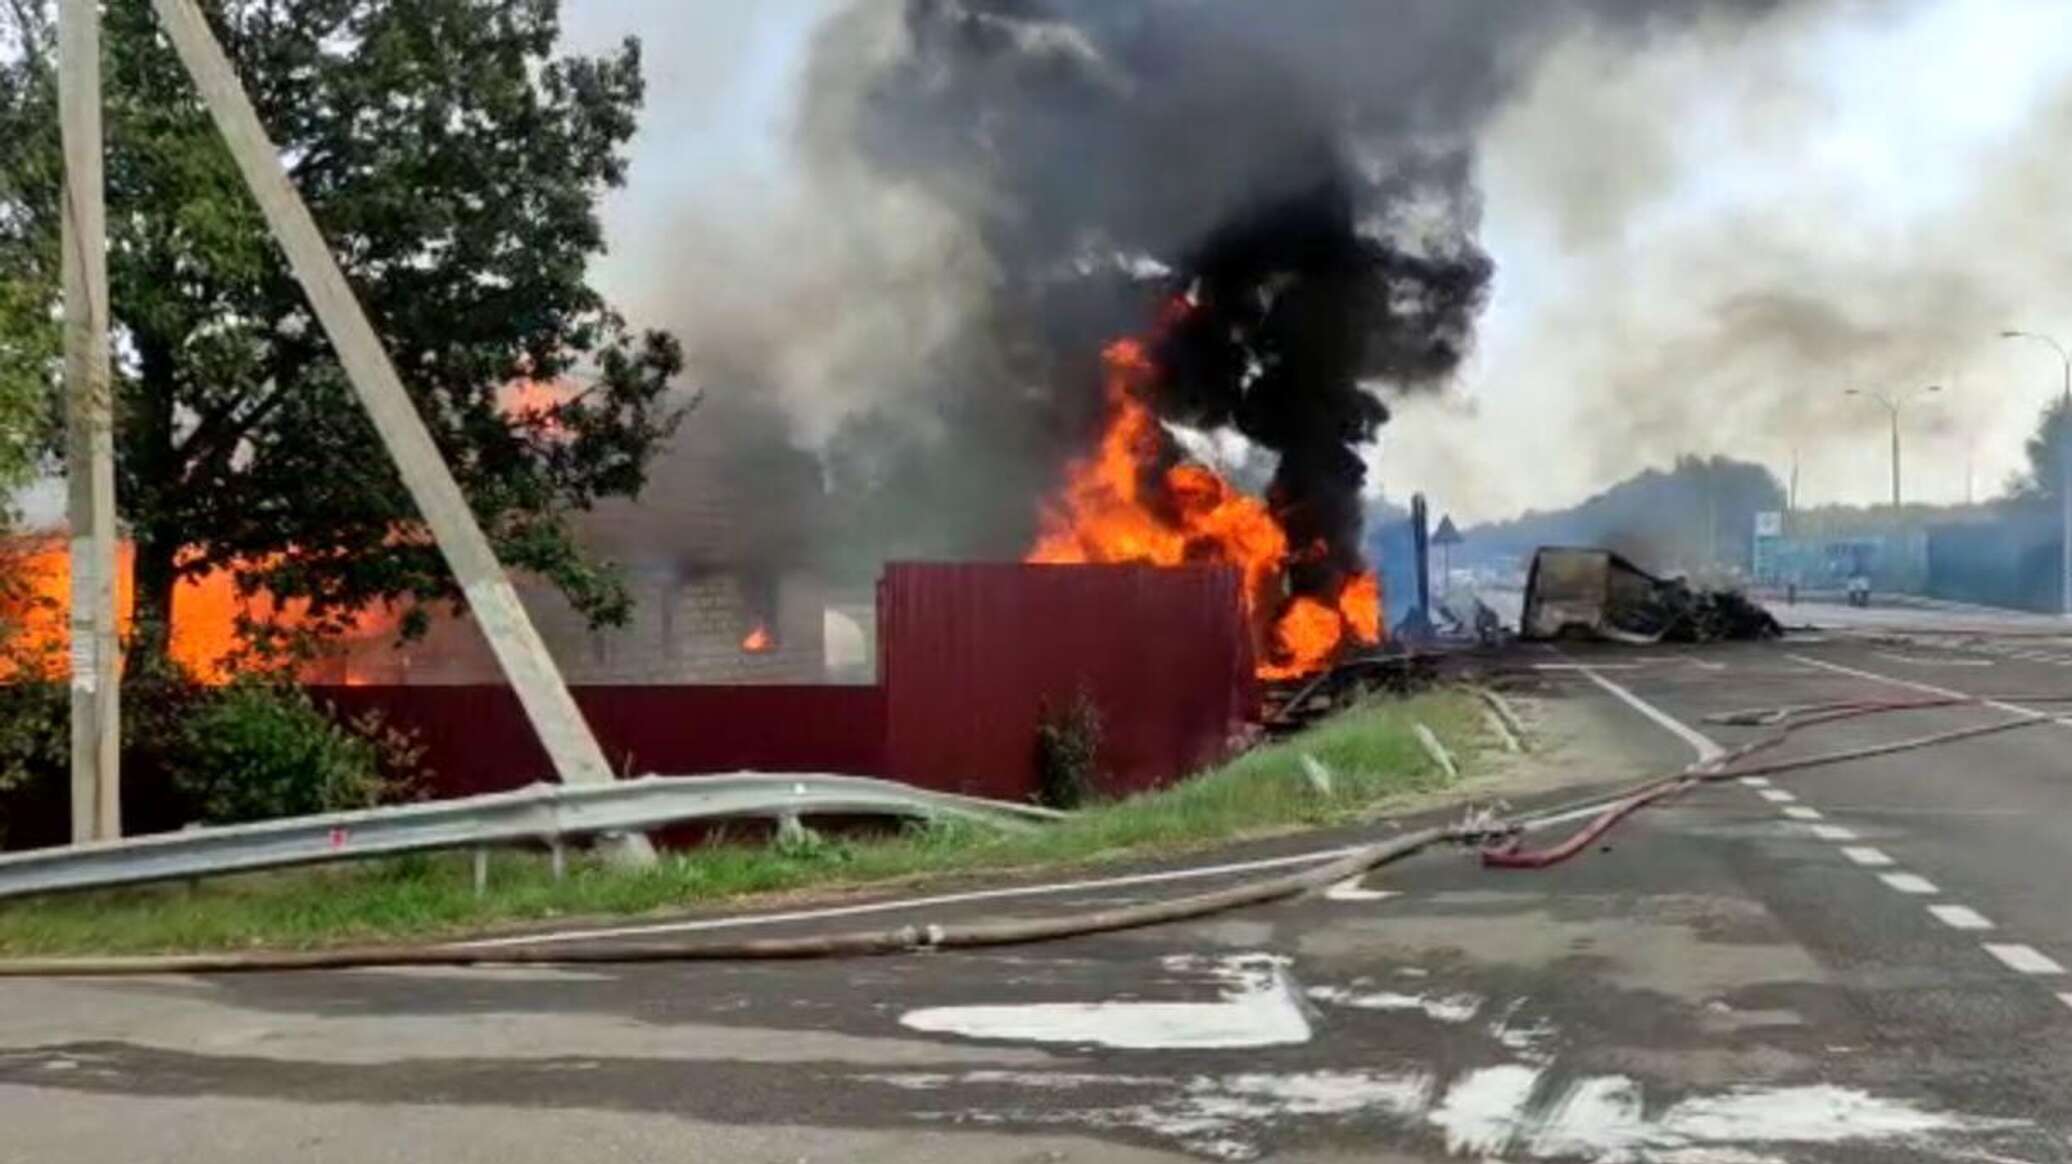 Туношна авария с бензовозом. Школа горит. Авария в Ярославле с бензовозом. Пожар в Красногвардейском районе.